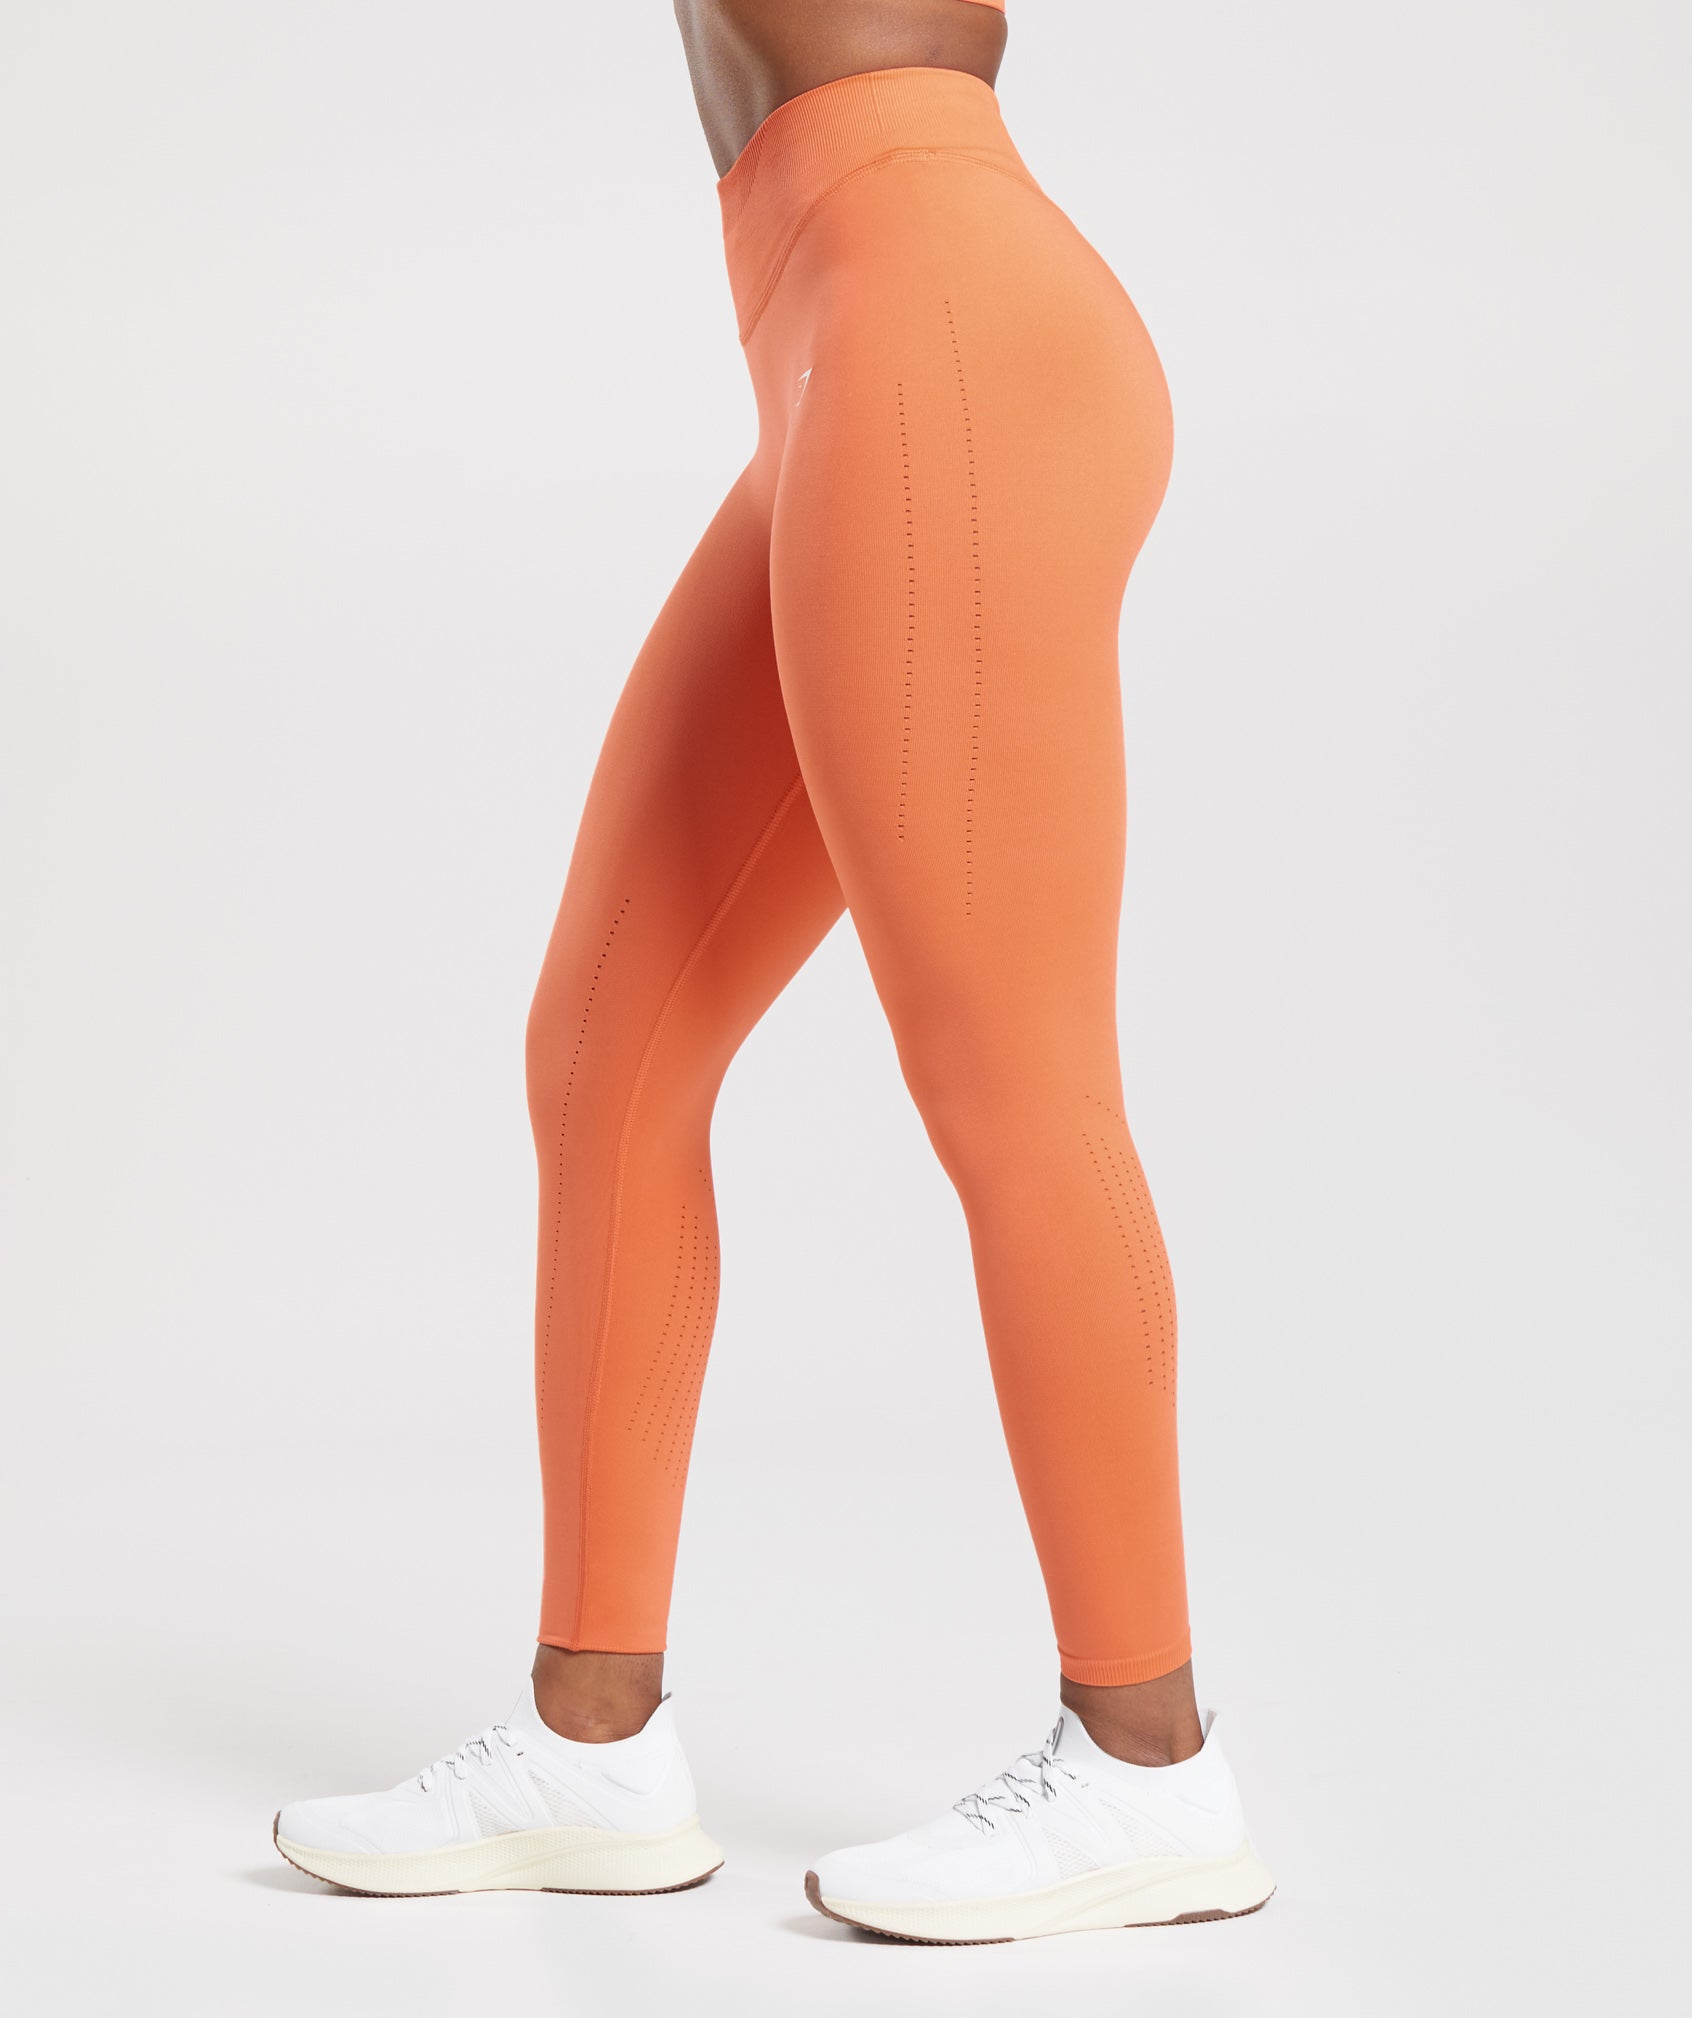 Women's Gymshark Training leggings 7/8 earth orange 